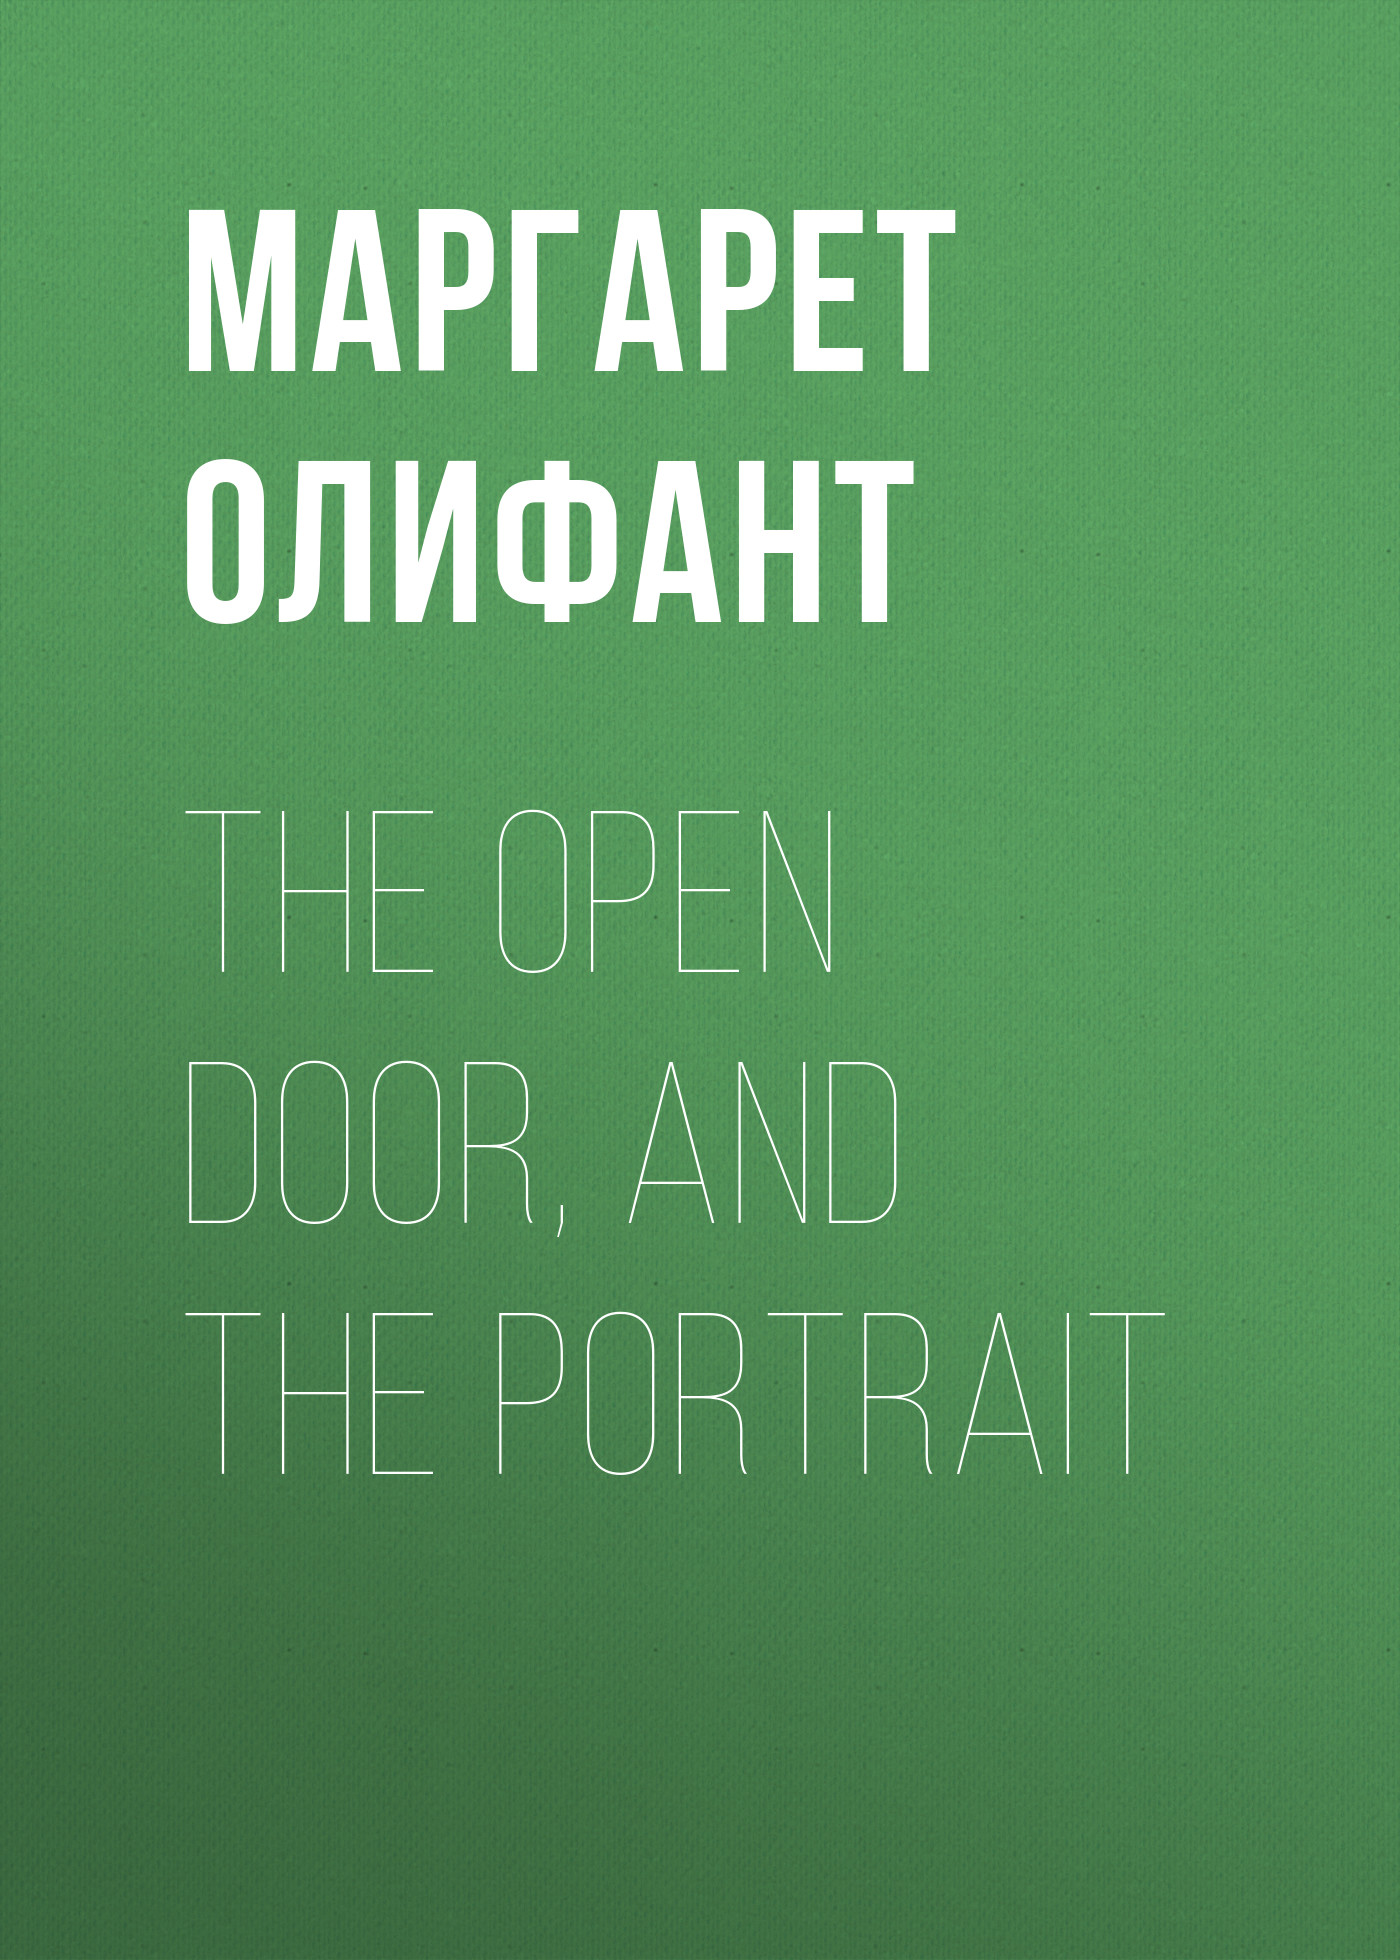 Книга The Open Door, and the Portrait из серии , созданная Маргарет Олифант, может относится к жанру Зарубежная классика, Литература 19 века, Зарубежная старинная литература. Стоимость электронной книги The Open Door, and the Portrait с идентификатором 34843358 составляет 0 руб.